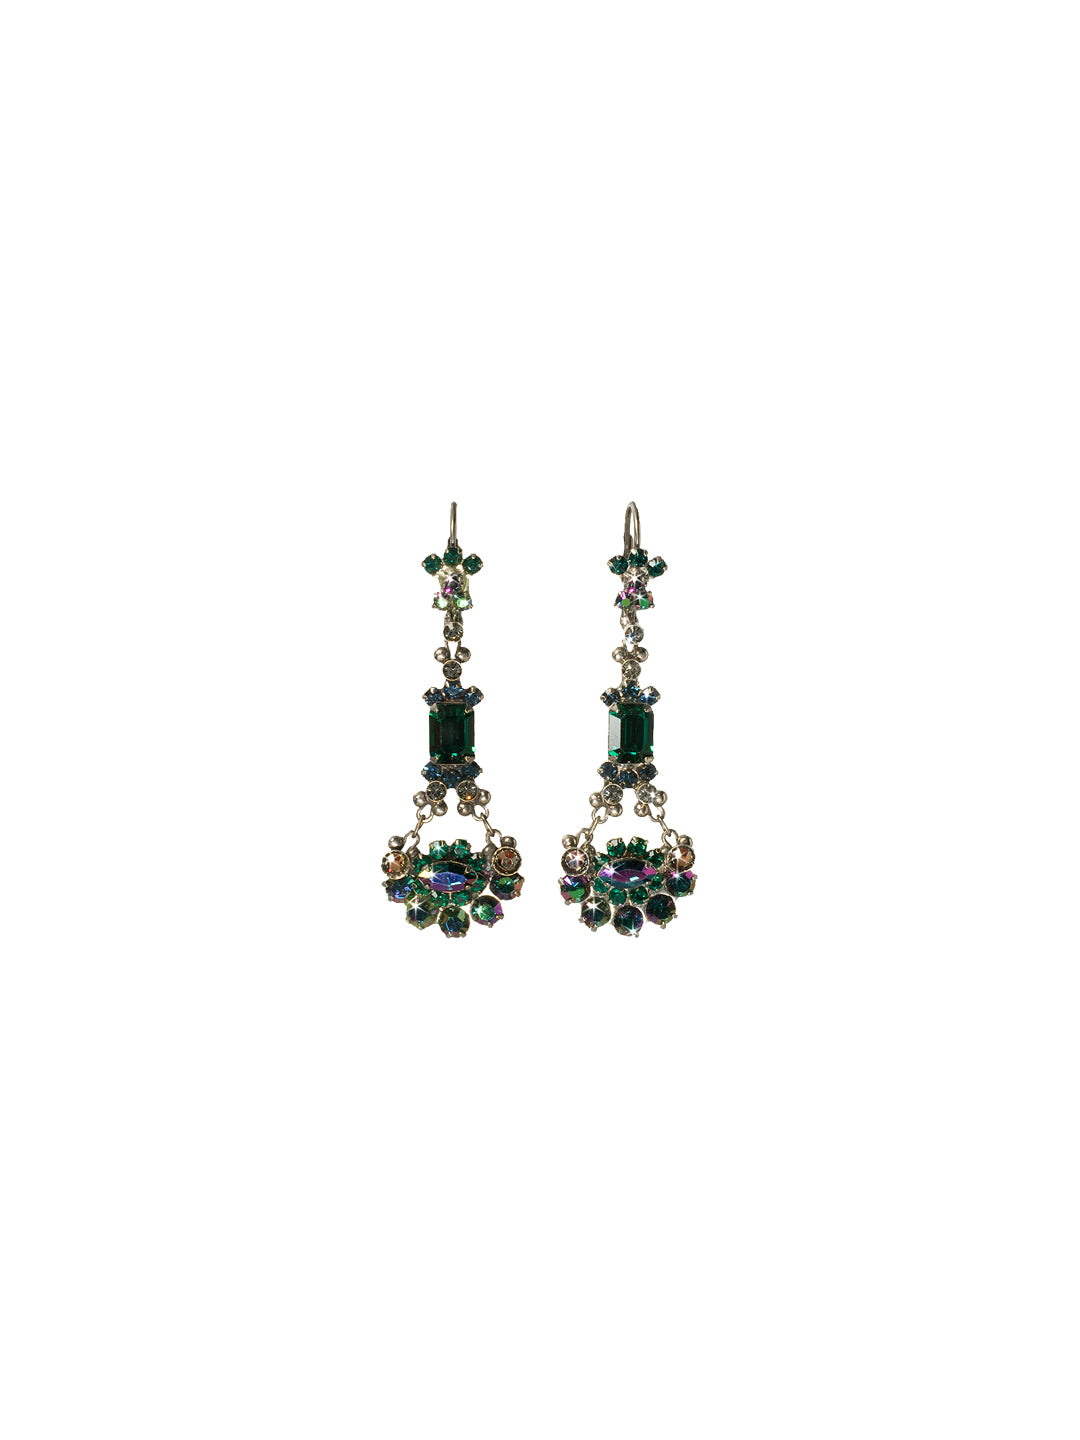 Crystal French Wire Earrings Dangle Earrings - EBT10ASEMC